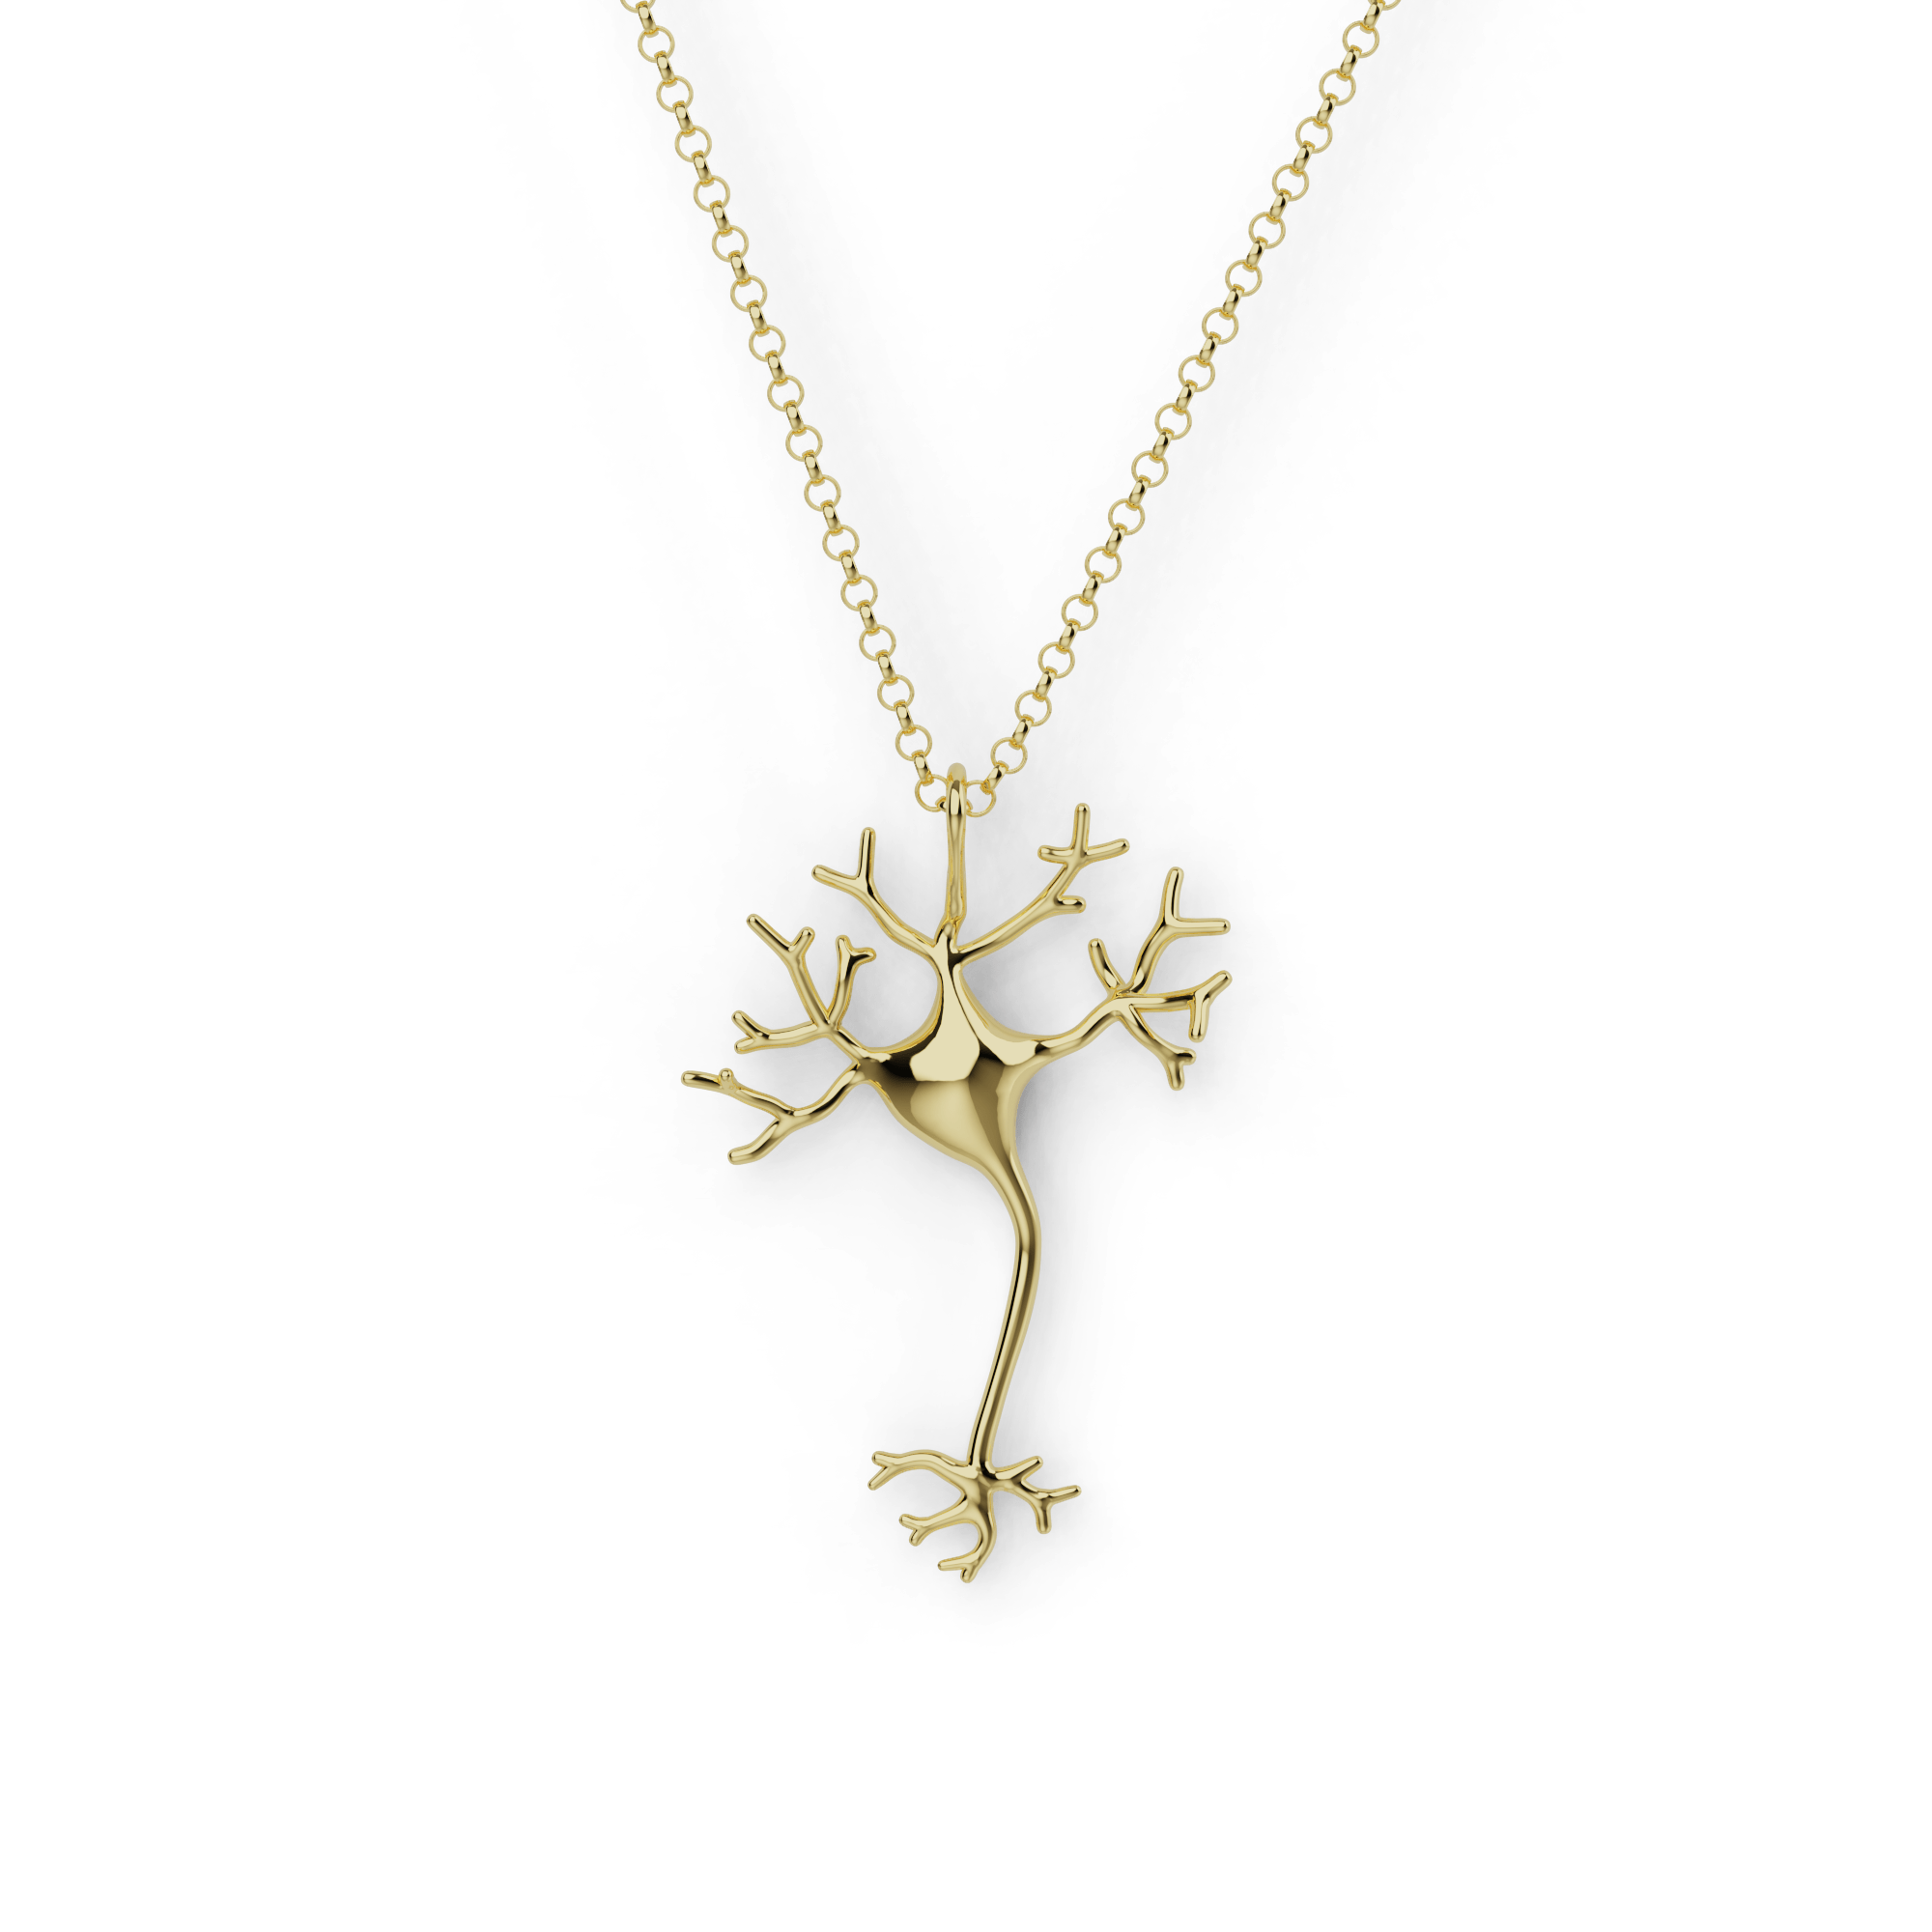 neuron necklace | gold vermeil